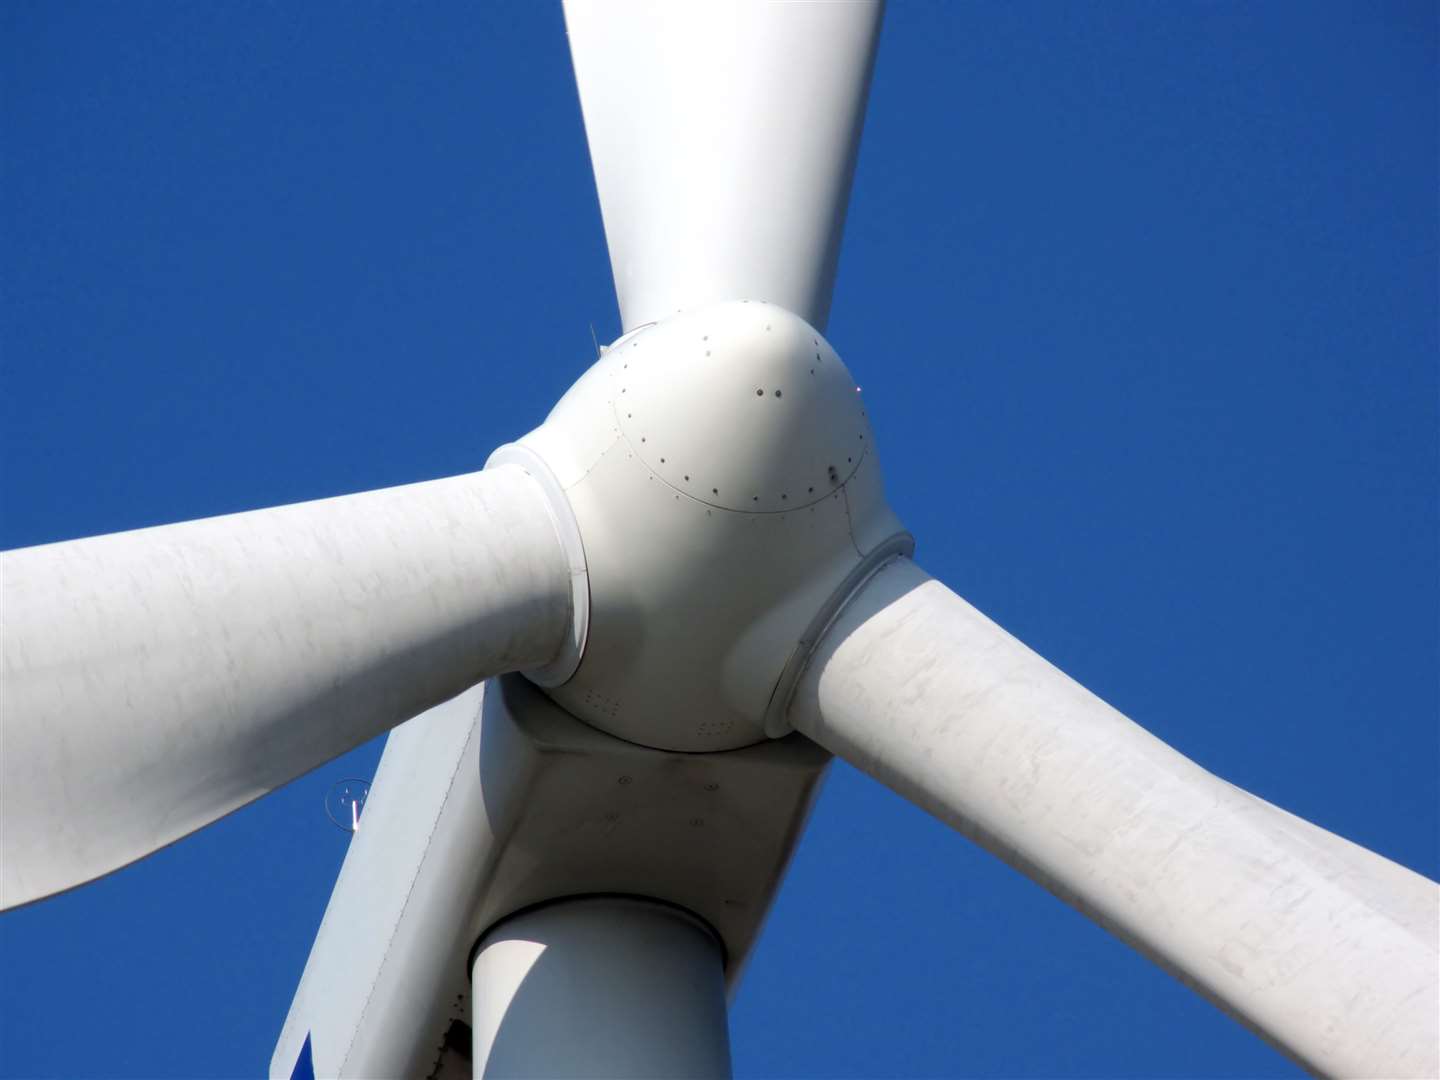 The Rosehall wind farm has 19 turbines.